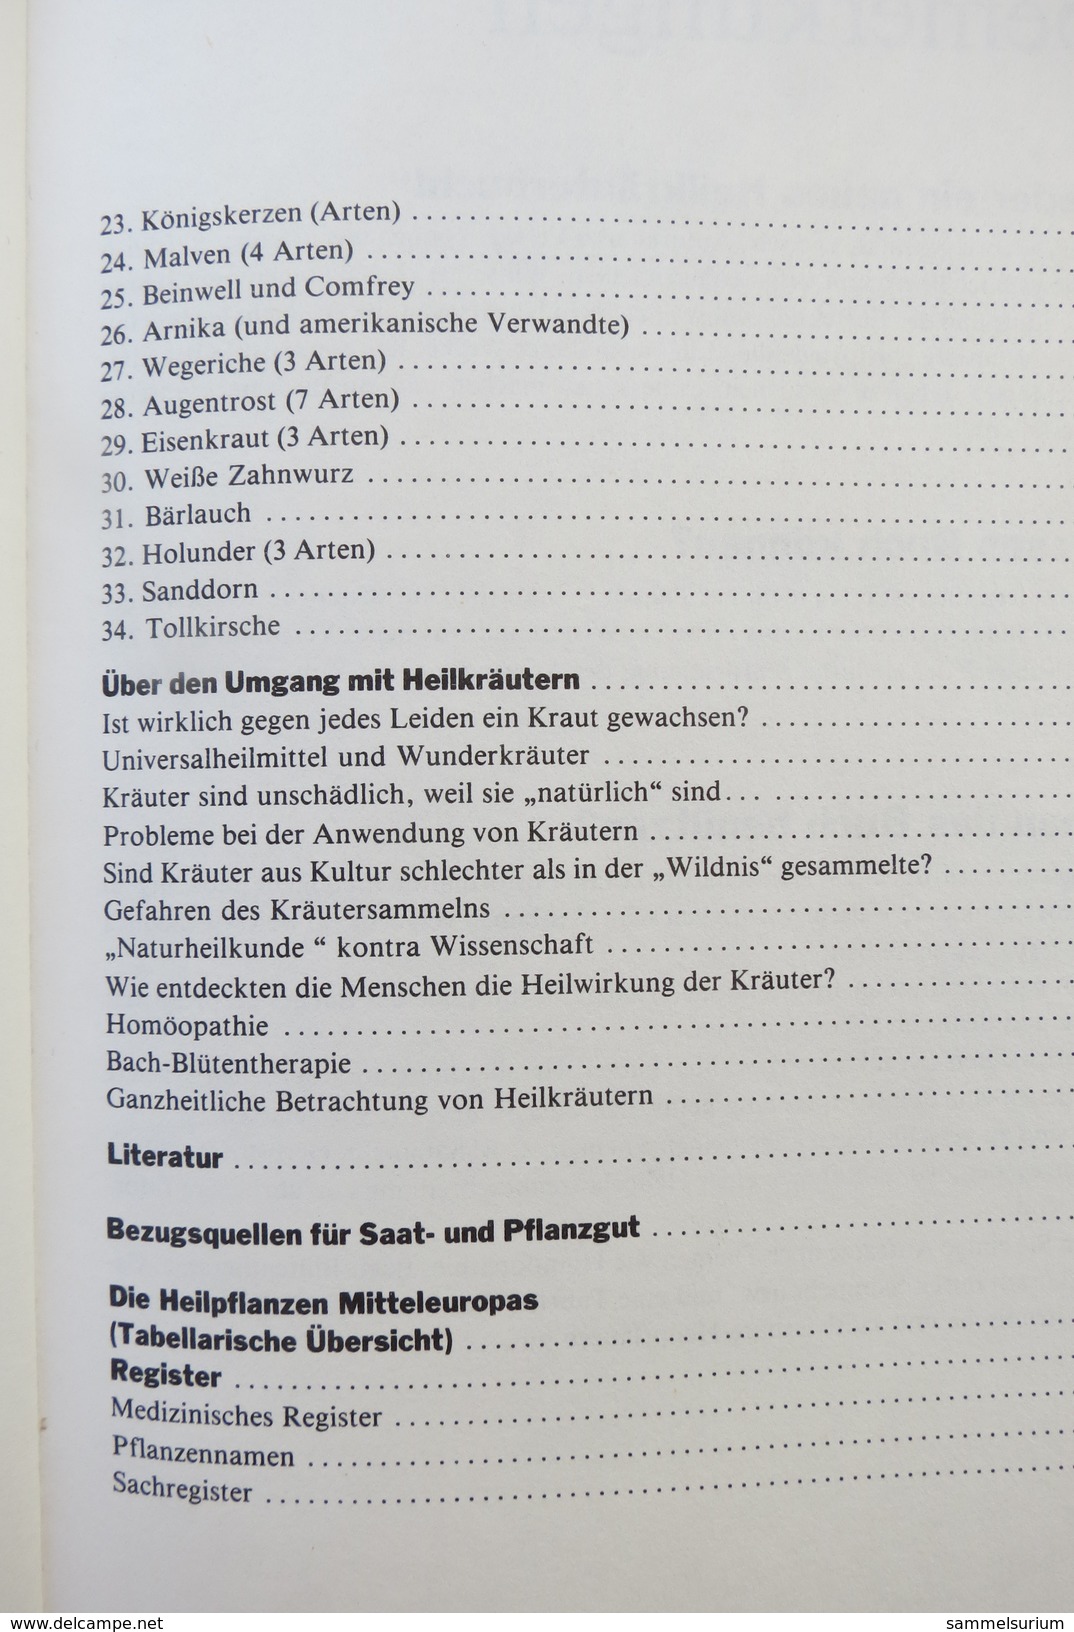 Wolfgang Holzner "Das Kritische Heilpflanzen-Handbuch" Experten Untersuchen, Was Heilpflanzen Wirklich Können - Medizin & Gesundheit